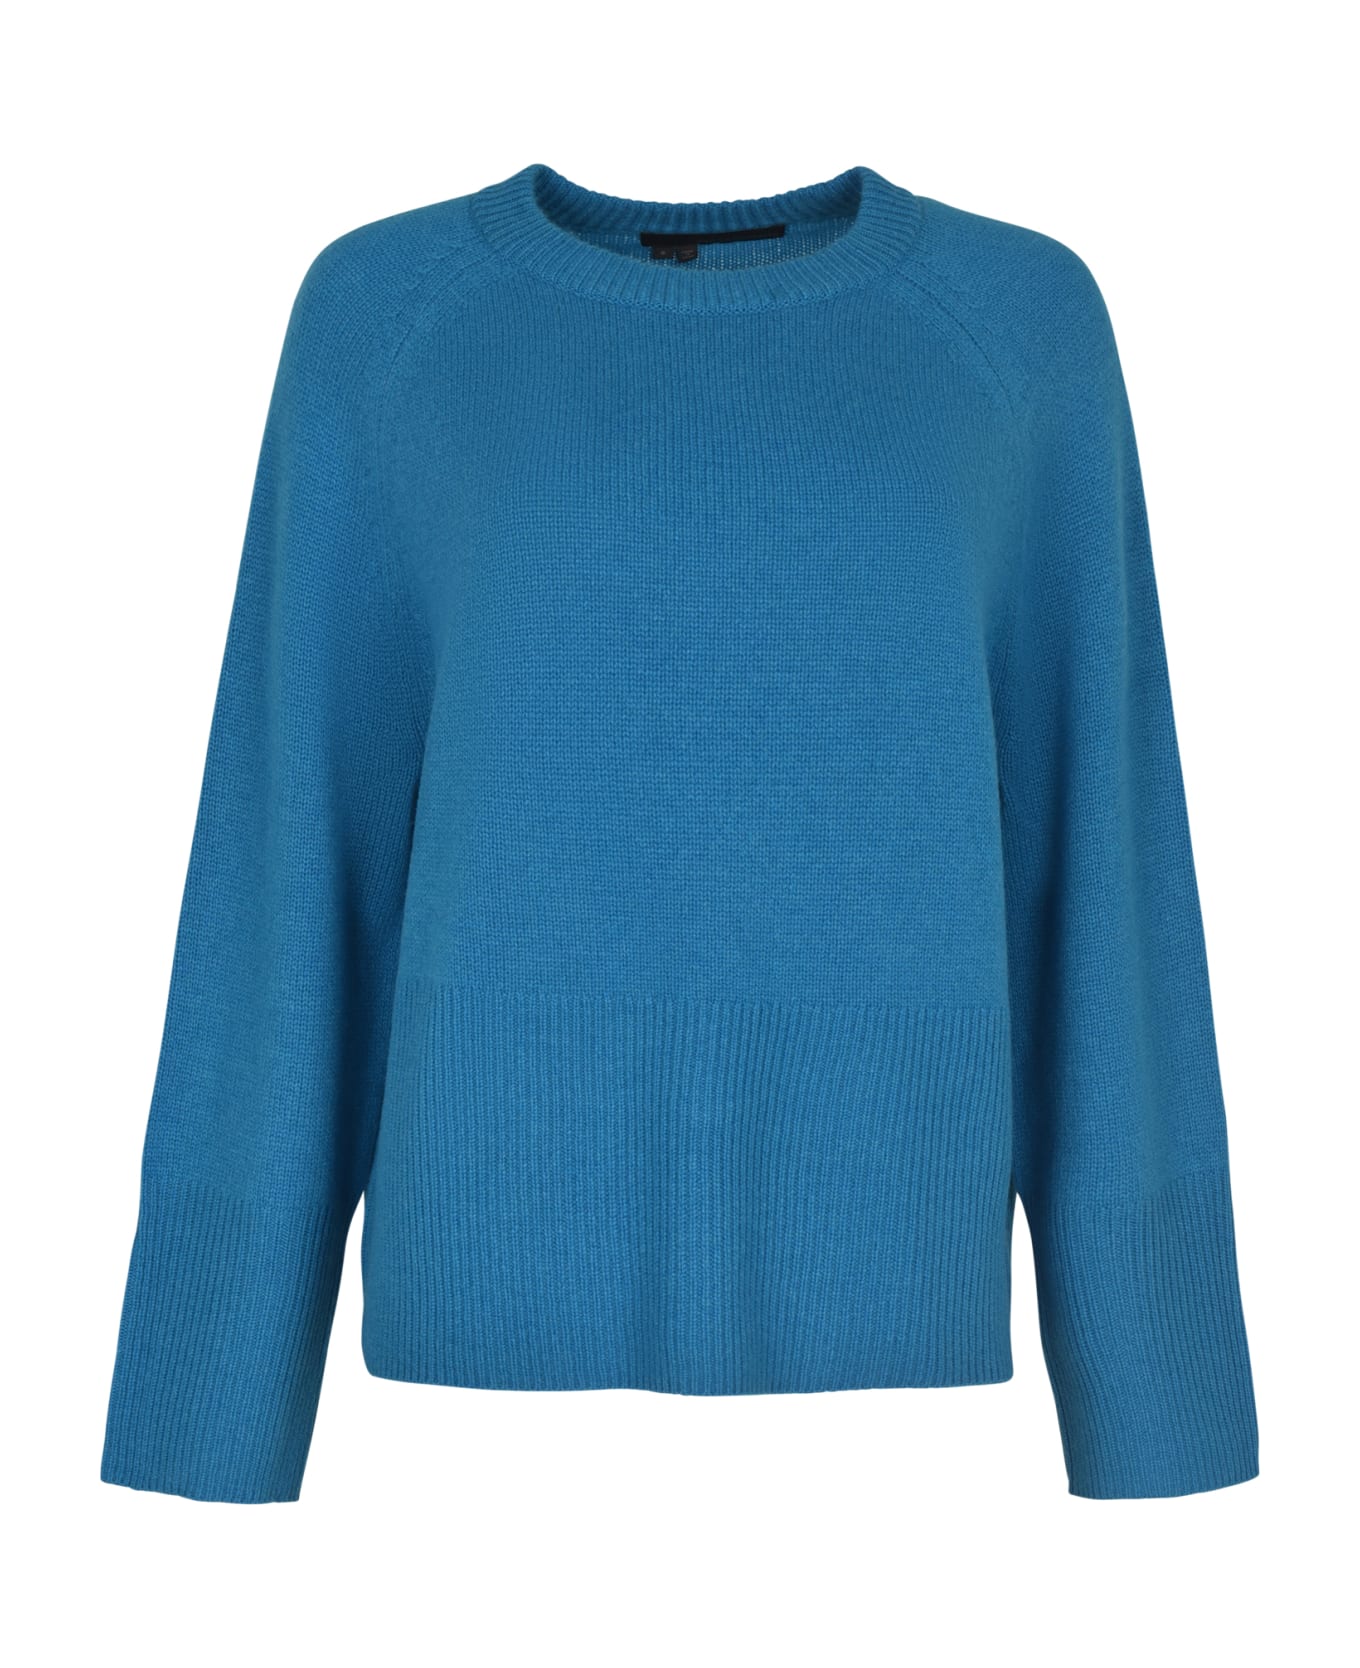 360Cashmere Rib Knit Sweater - Turquoise ニットウェア